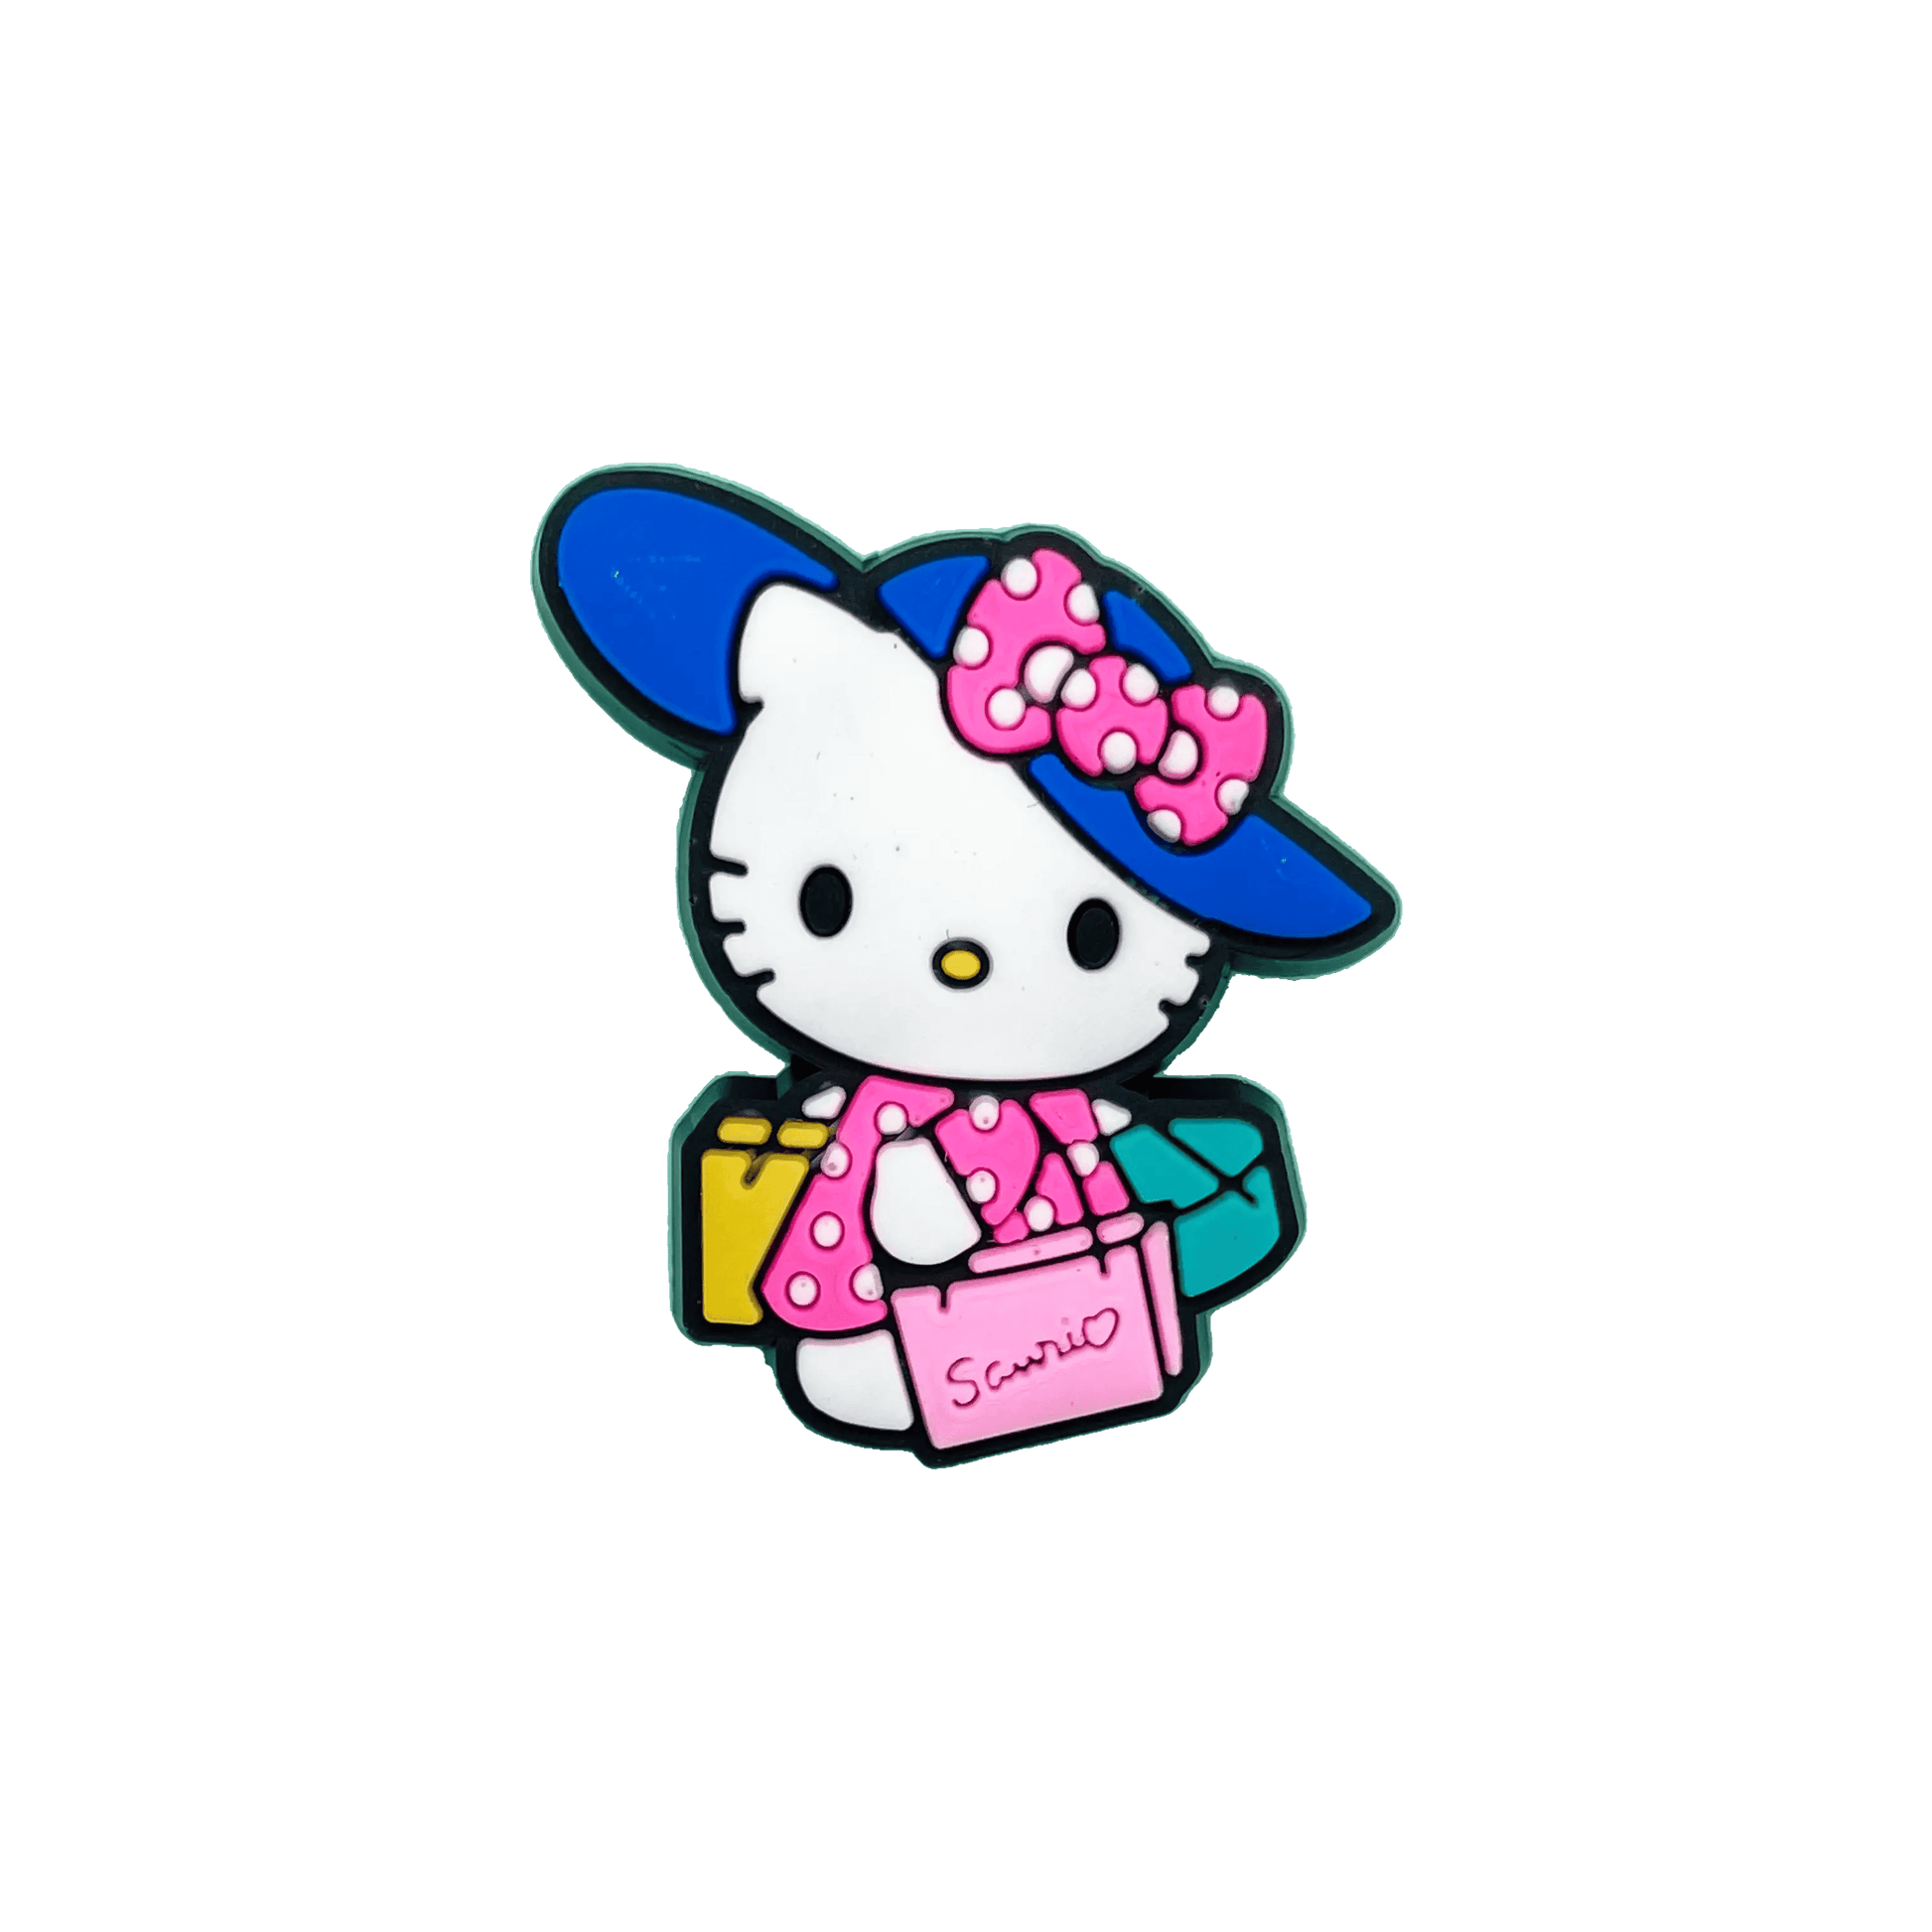 Valentine’s Day Hello Kitty Croc Charm Set